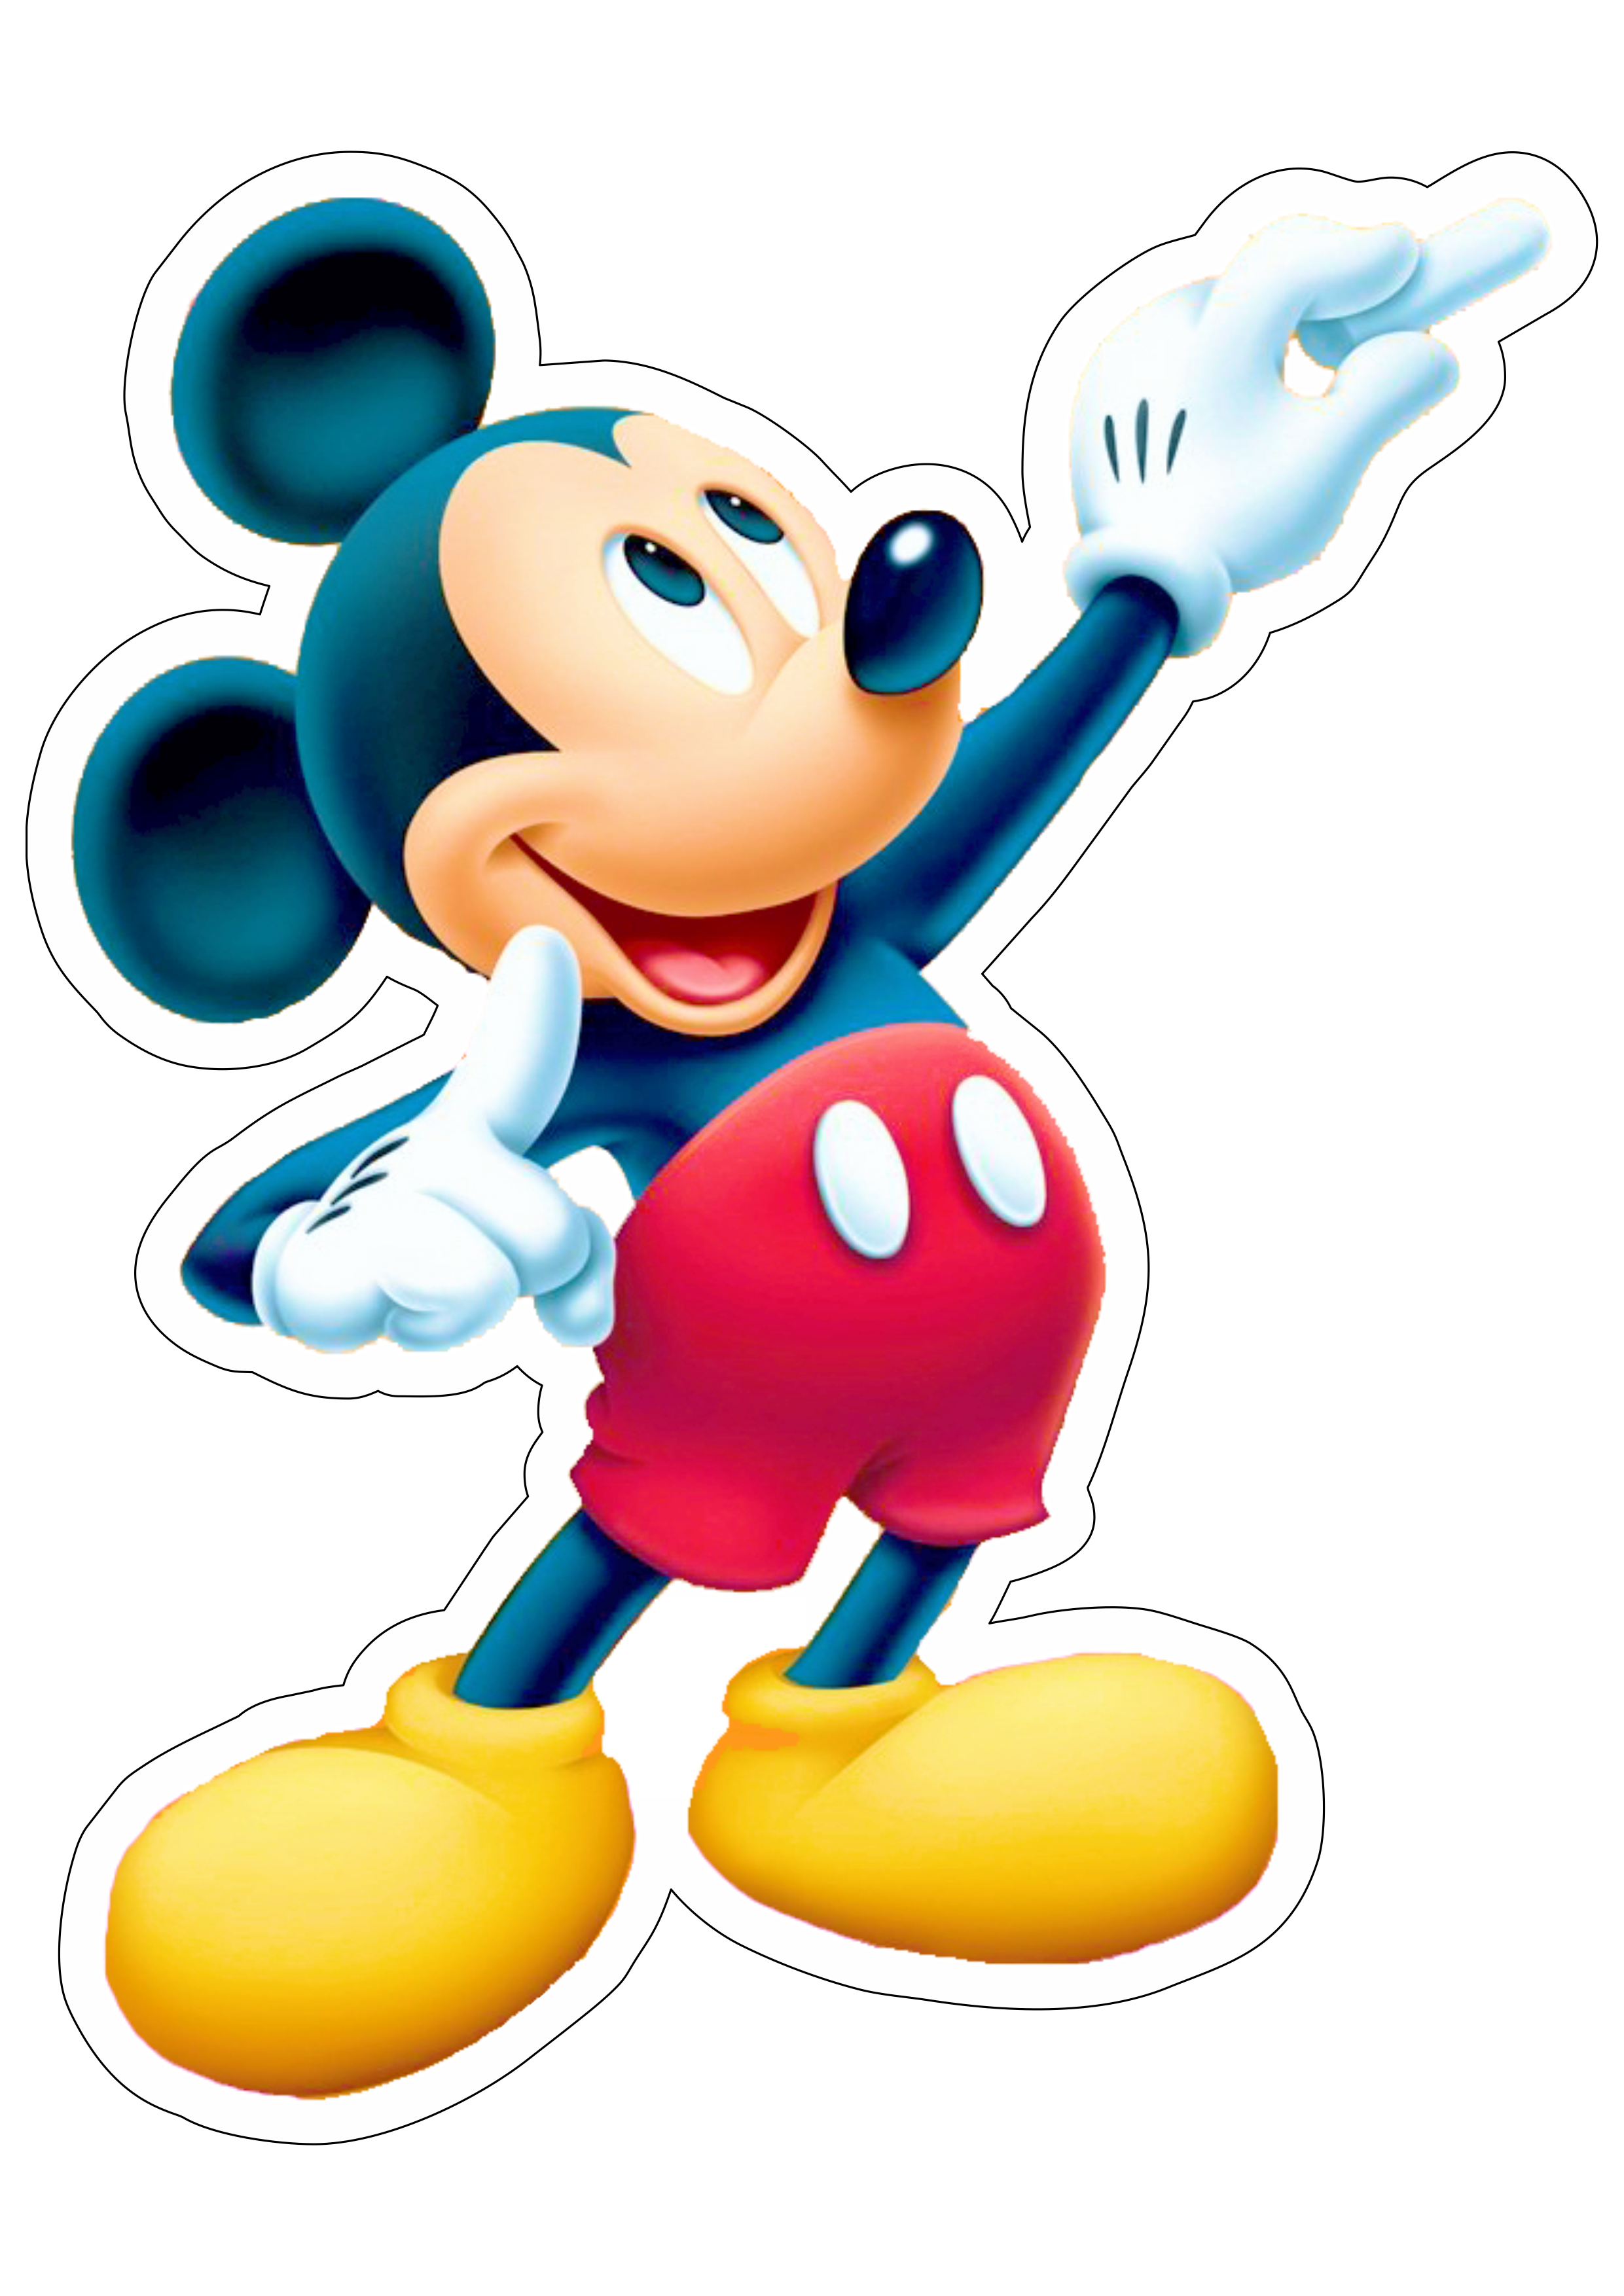 Mickey Mouse personagem fictício disney desenho animado infantil design pack de imagens assistir online pack de imagens png